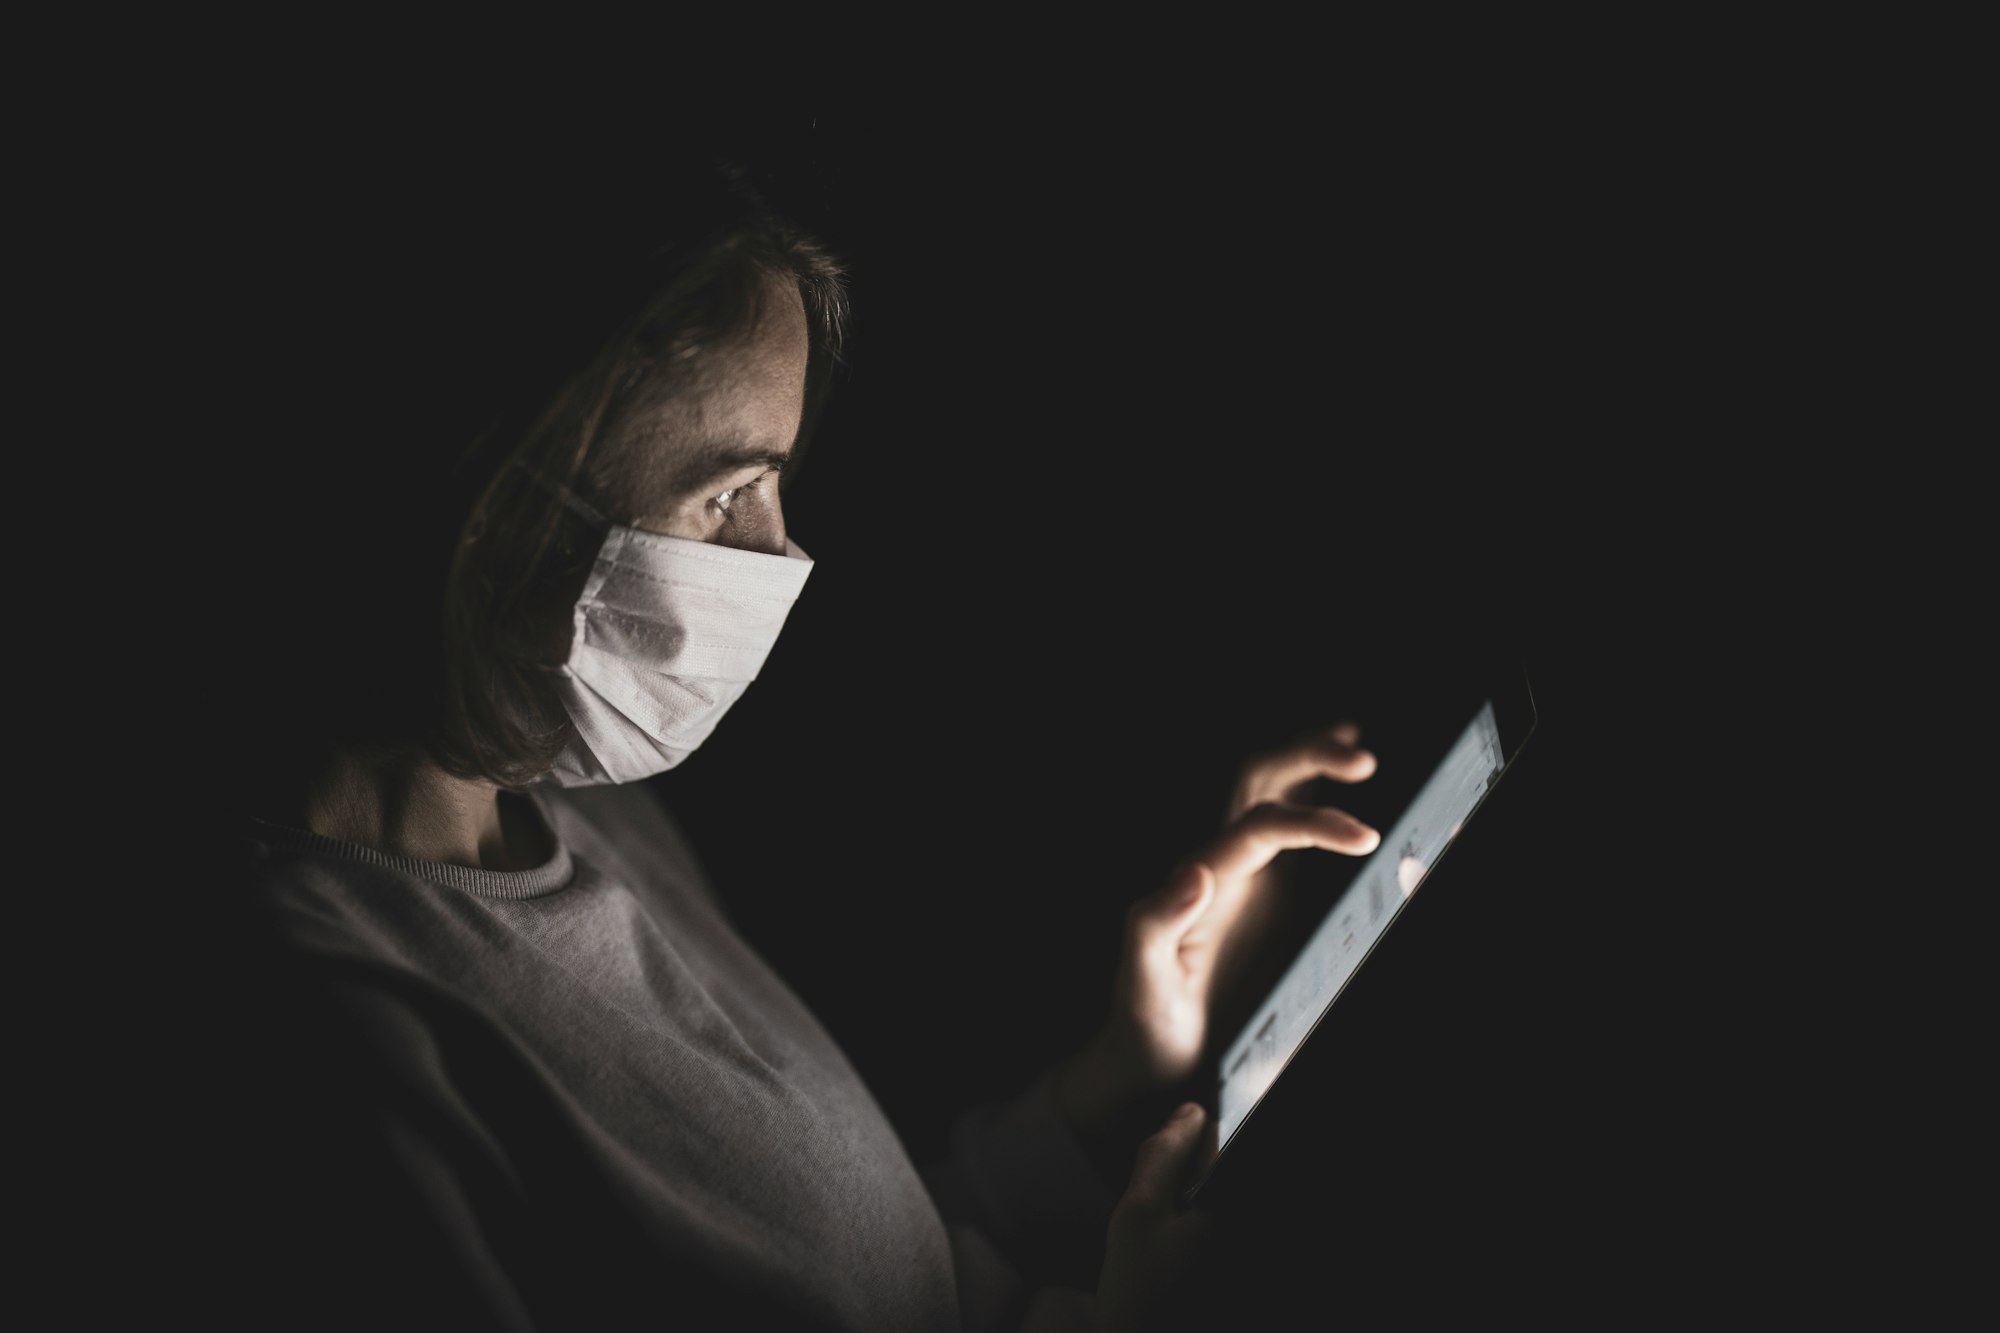 COVİD-19 pandemi sürecinde online eğitimde kişisel verilerin korunmasına ilişkin öneriler